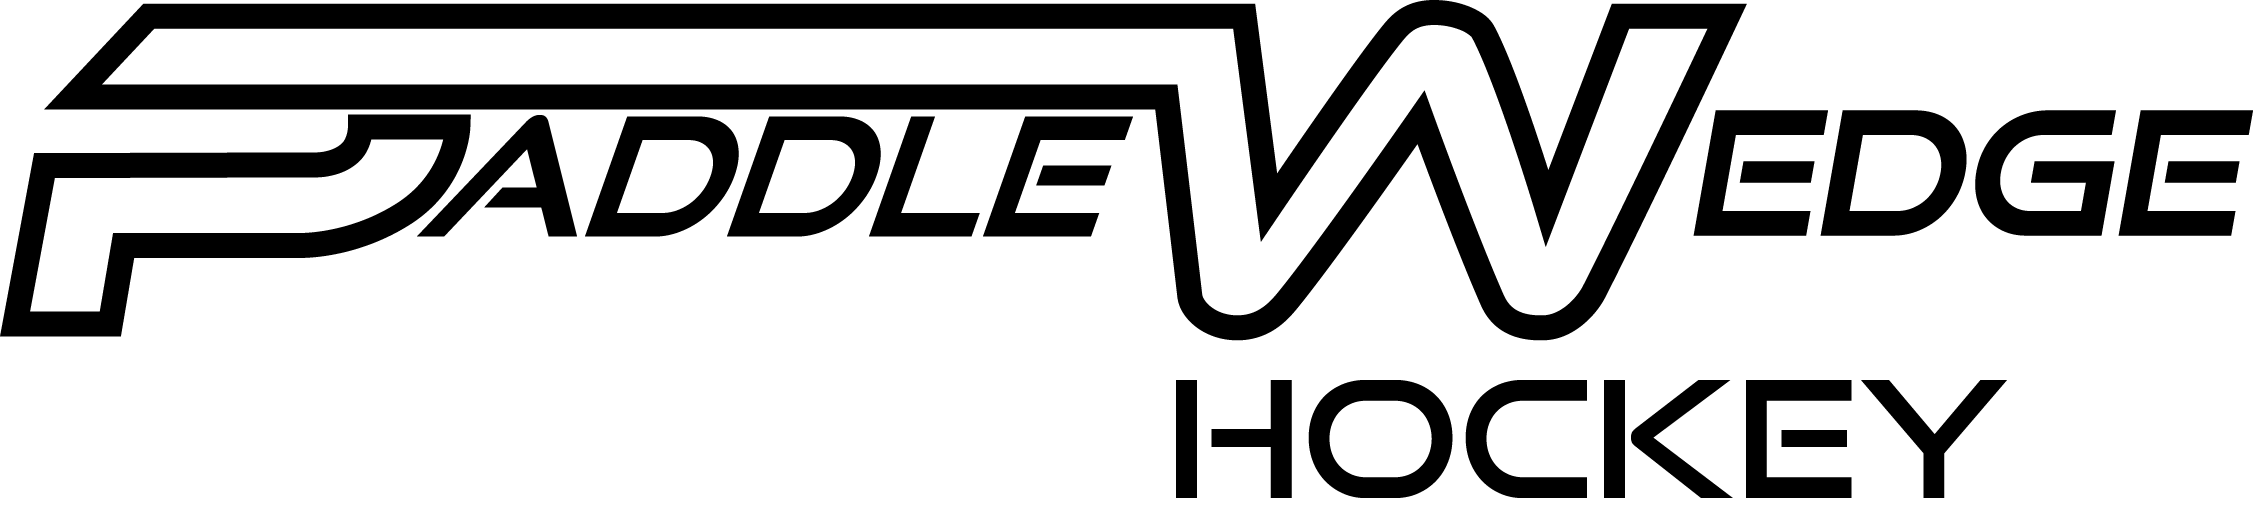 Paddle Wedge Hockey logo